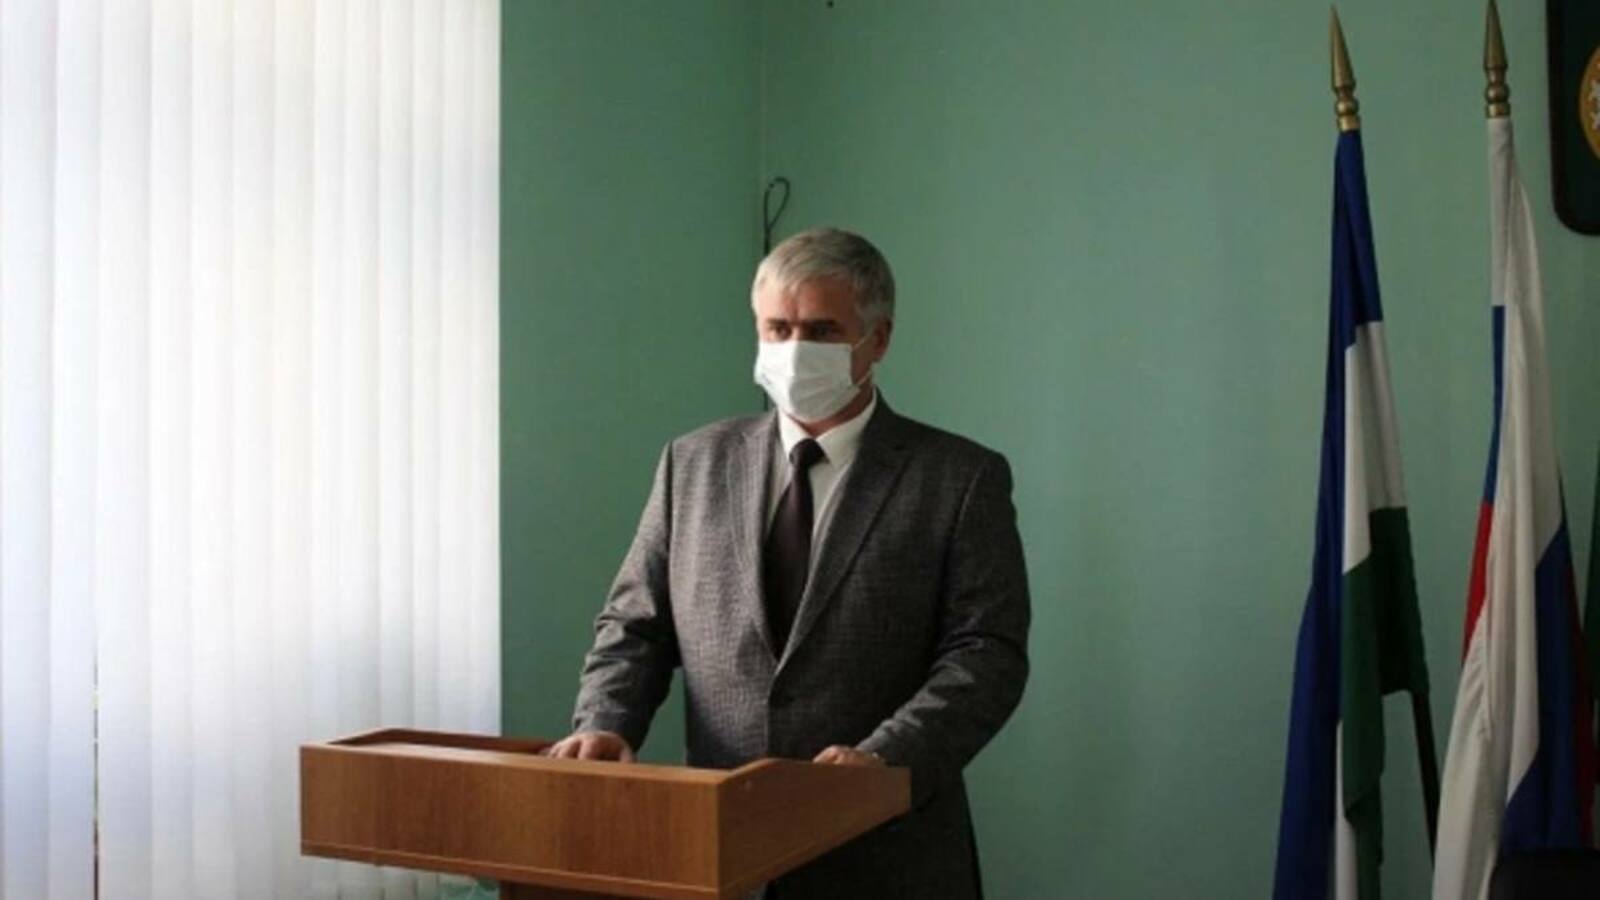 Глава города Давлеканово признан виновным в превышении полномочий при строительстве очистных сооружений